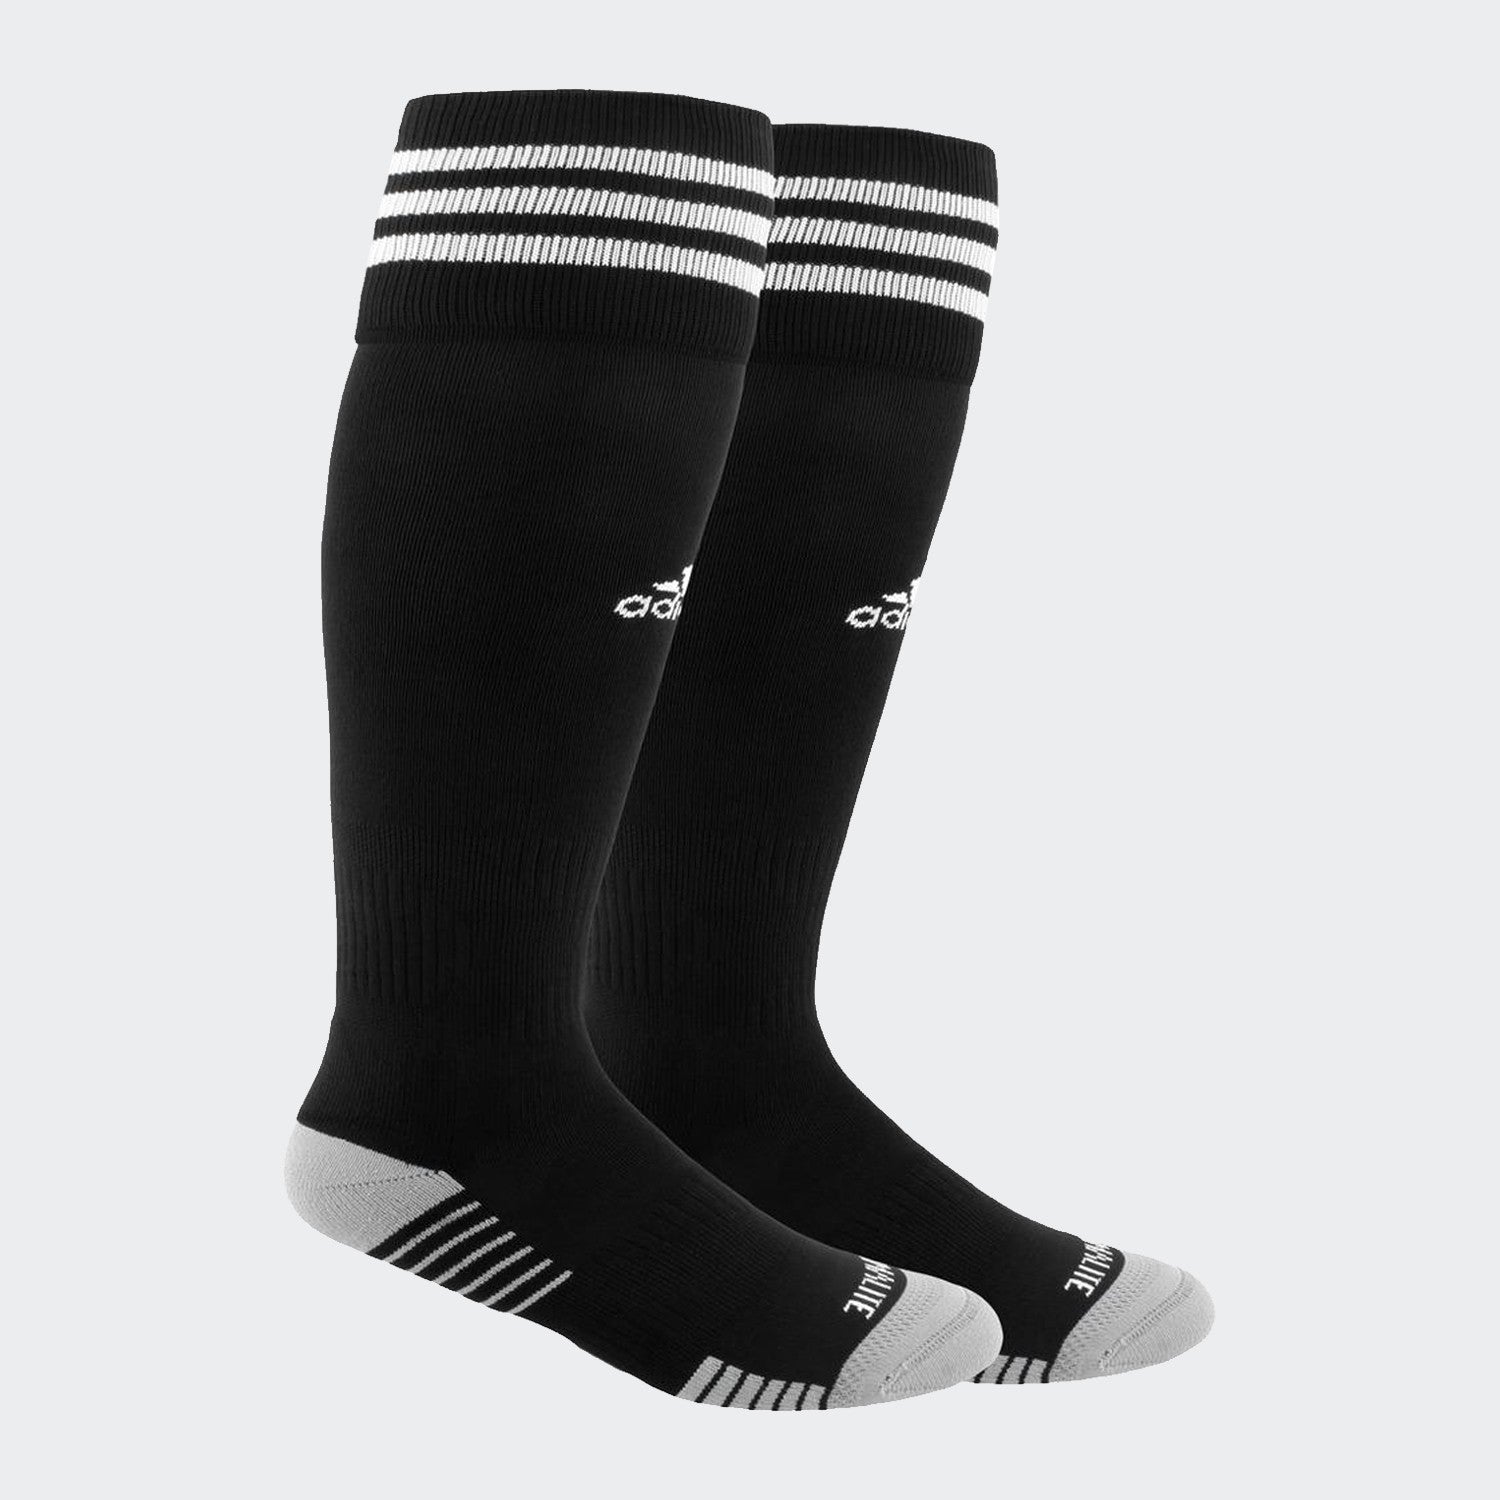 Copa Zone Cushion IV OTC Sock Large (9-13) - Black/White